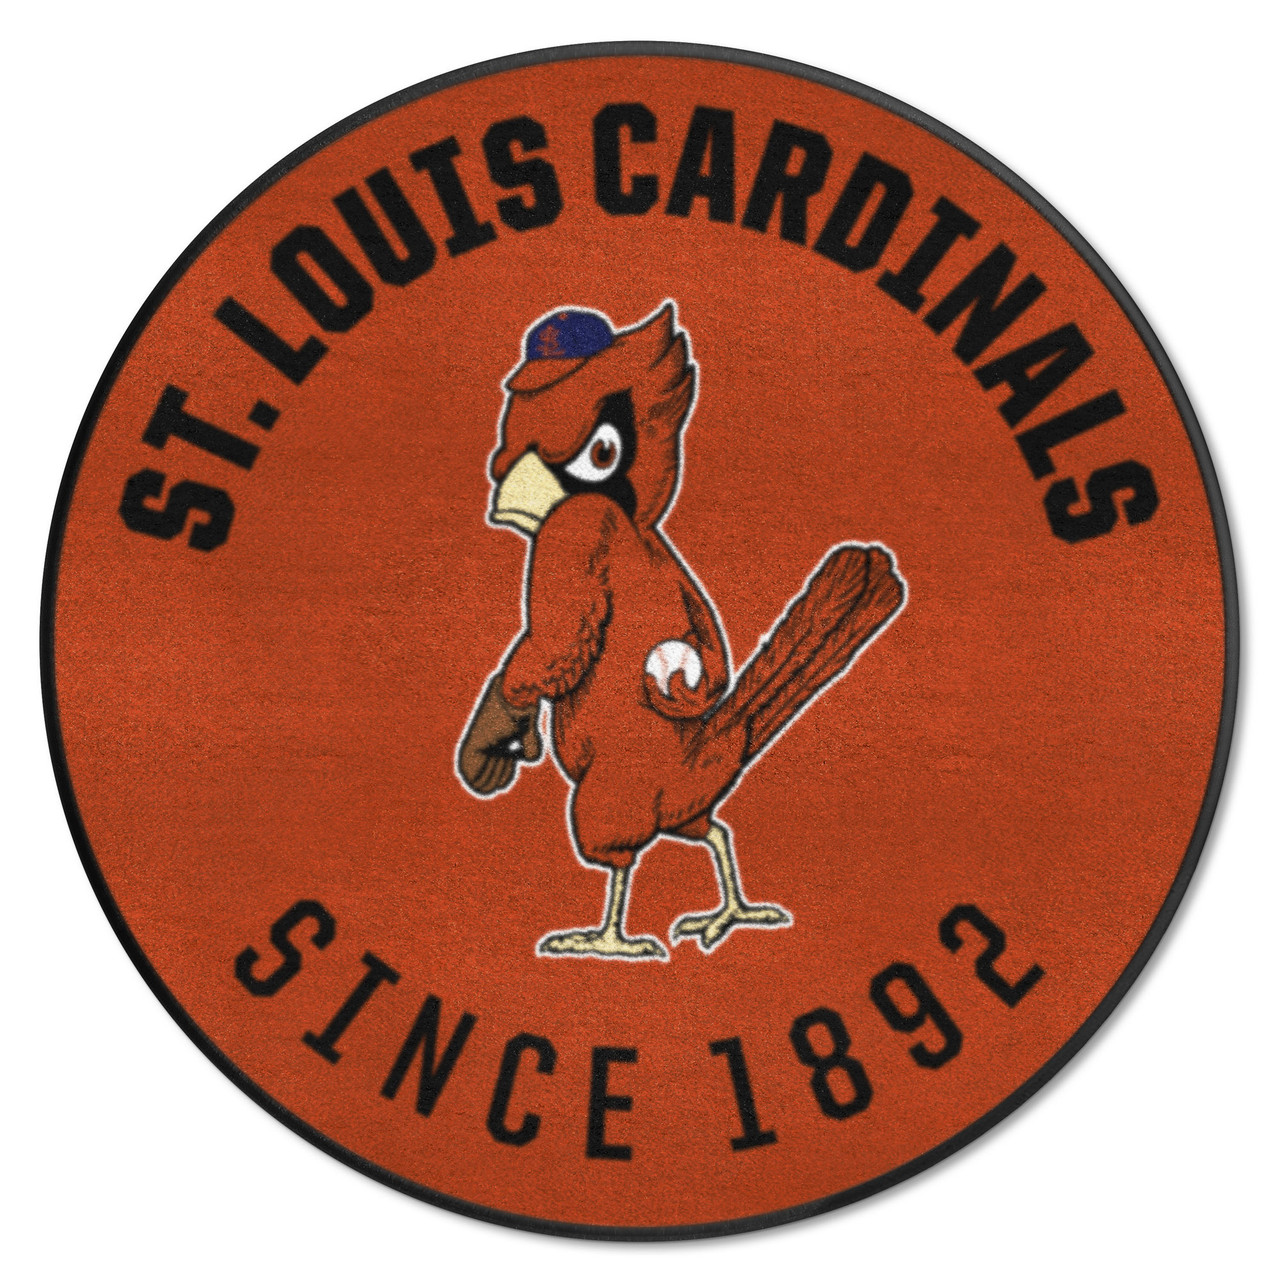 MLB - St. Louis Cardinals Baseball Runner 30x72